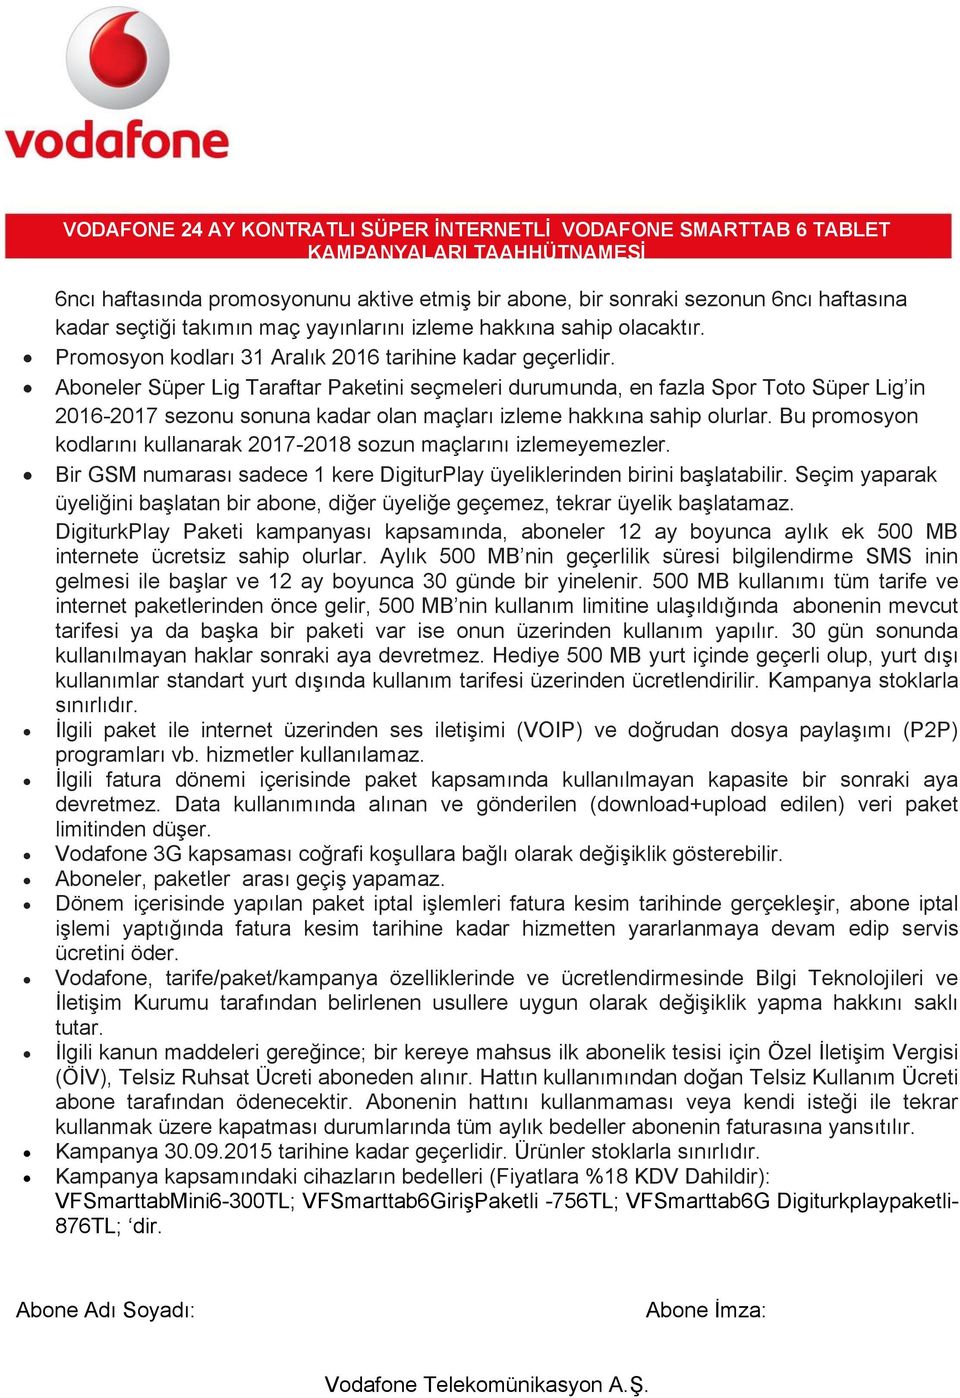 Aboneler Süper Lig Taraftar Paketini seçmeleri durumunda, en fazla Spor Toto Süper Lig in 2016-2017 sezonu sonuna kadar olan maçları izleme hakkına sahip olurlar.